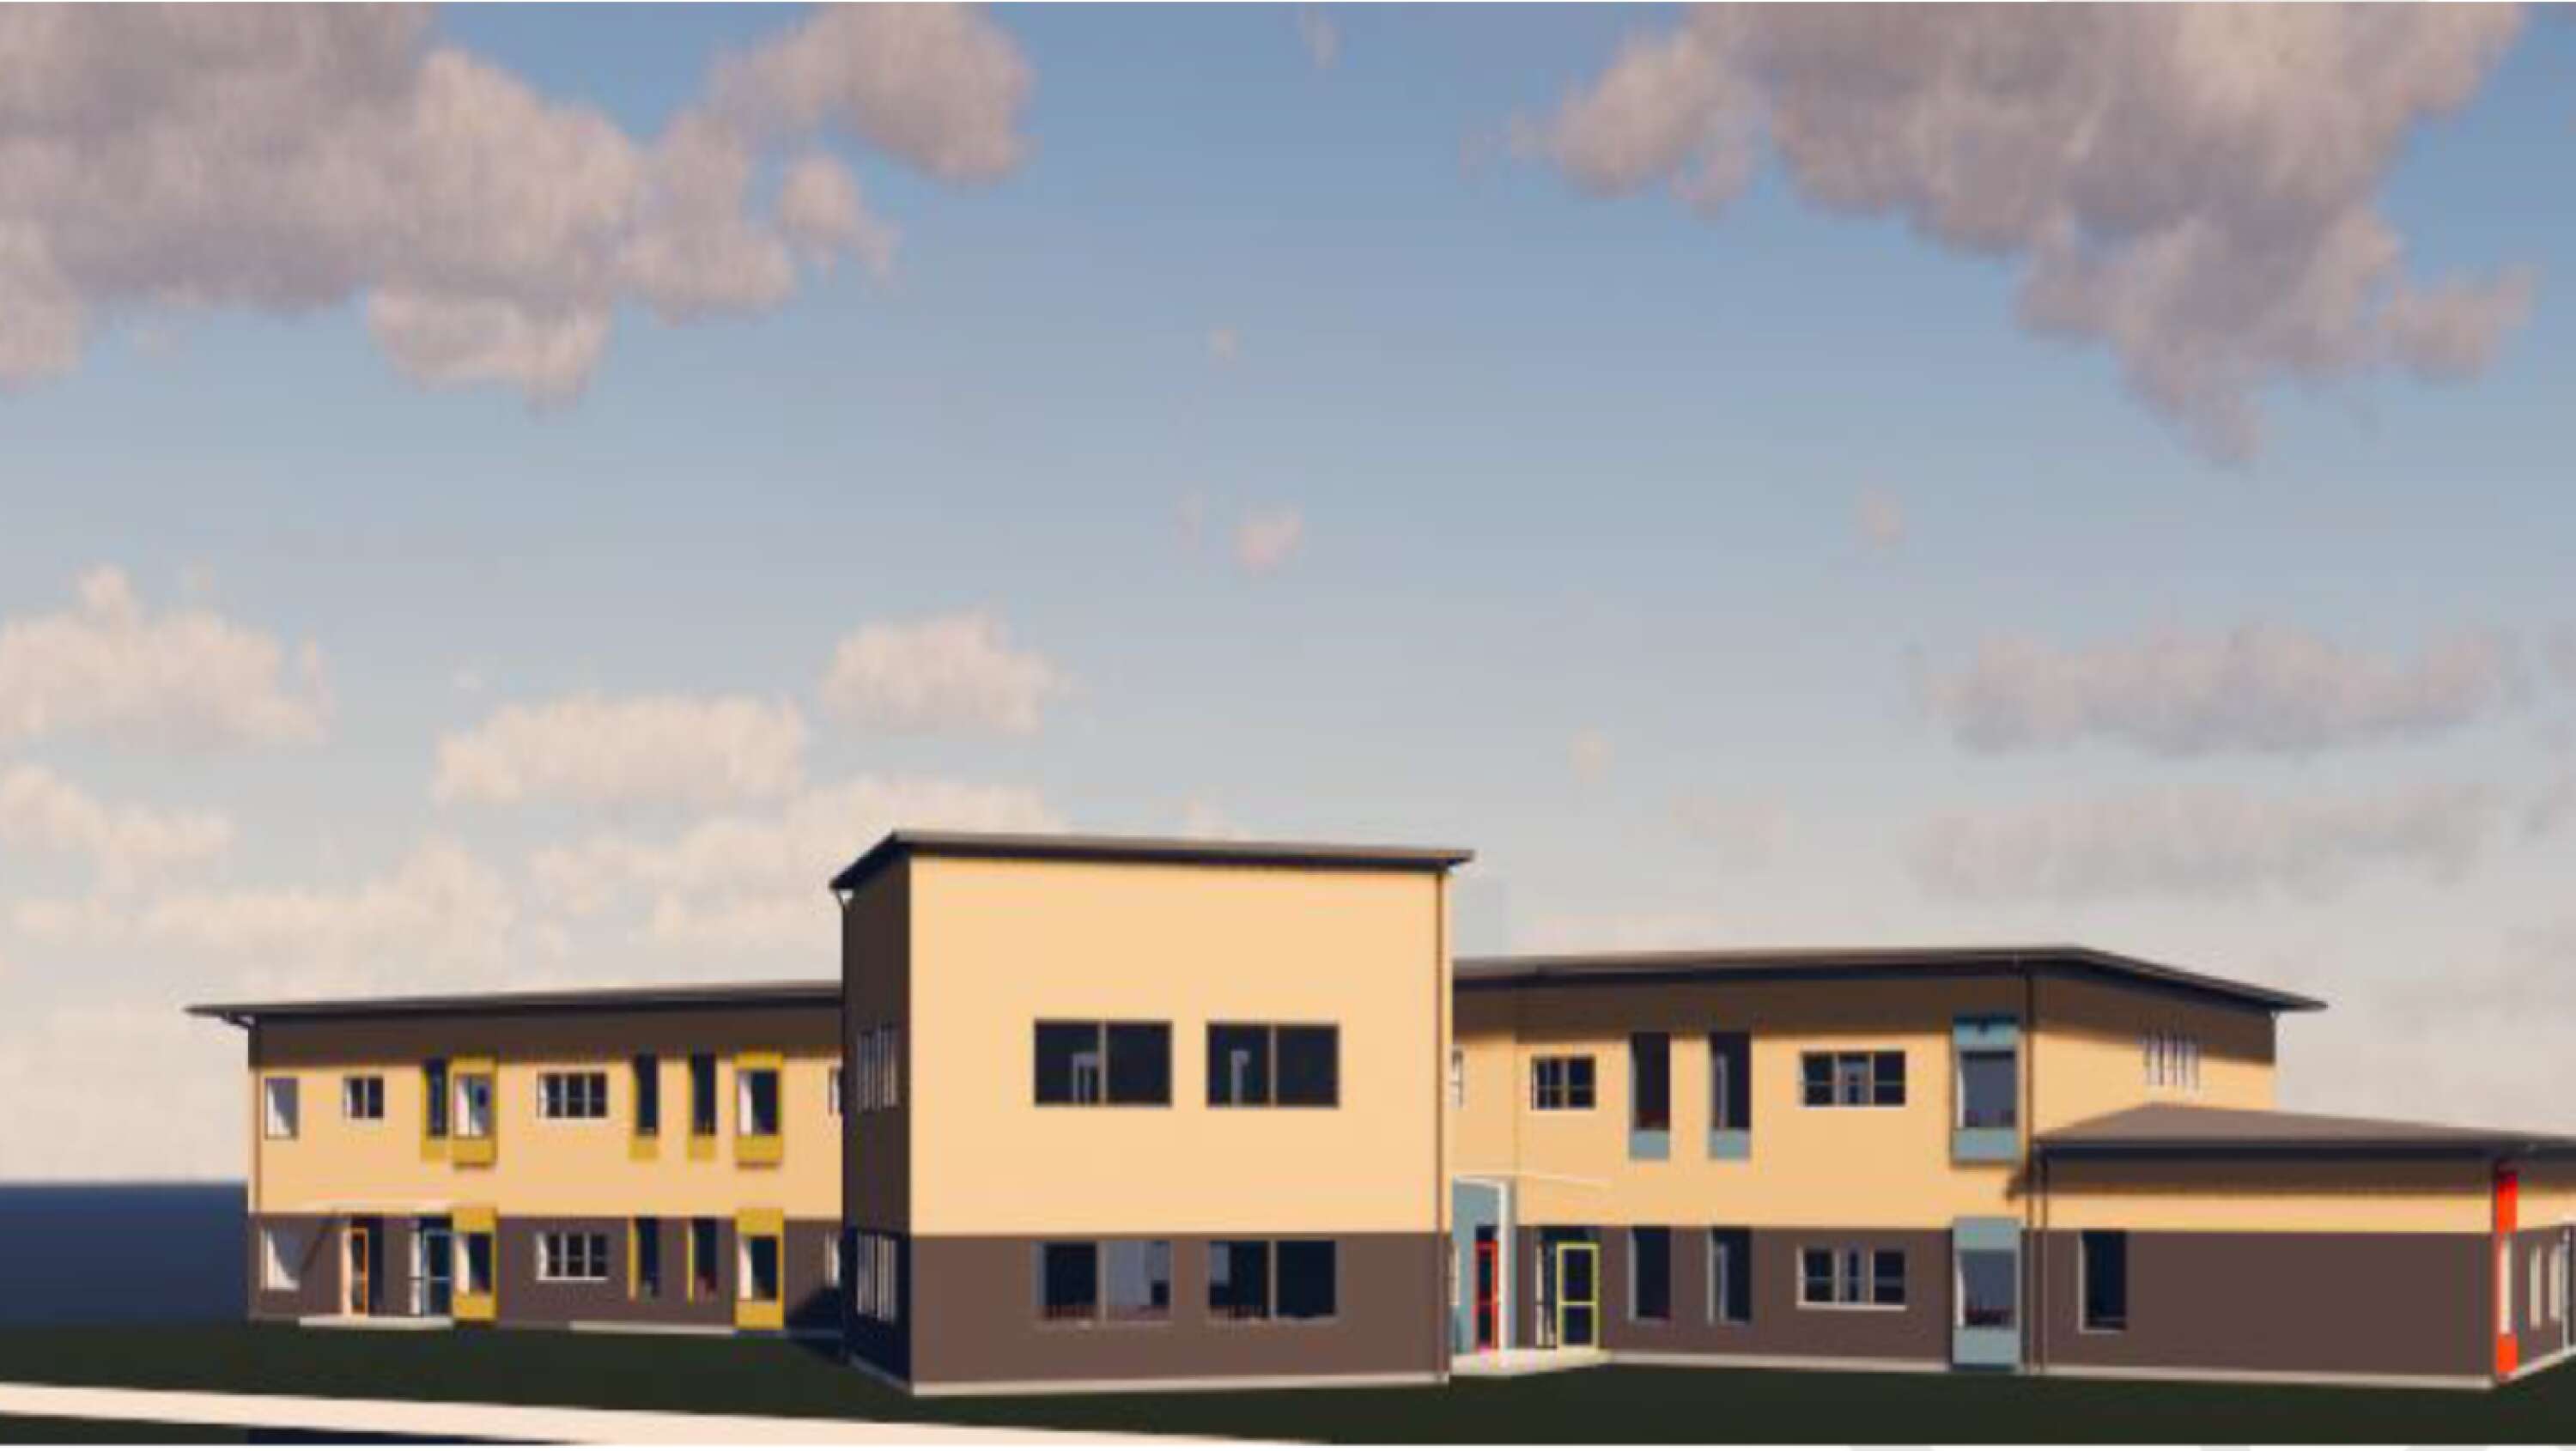 Så här kommer den nya skolbyggnaden för låg- och mellanstadiet på Nordmarkens skola att se ut när den står färdig nästa sommar.